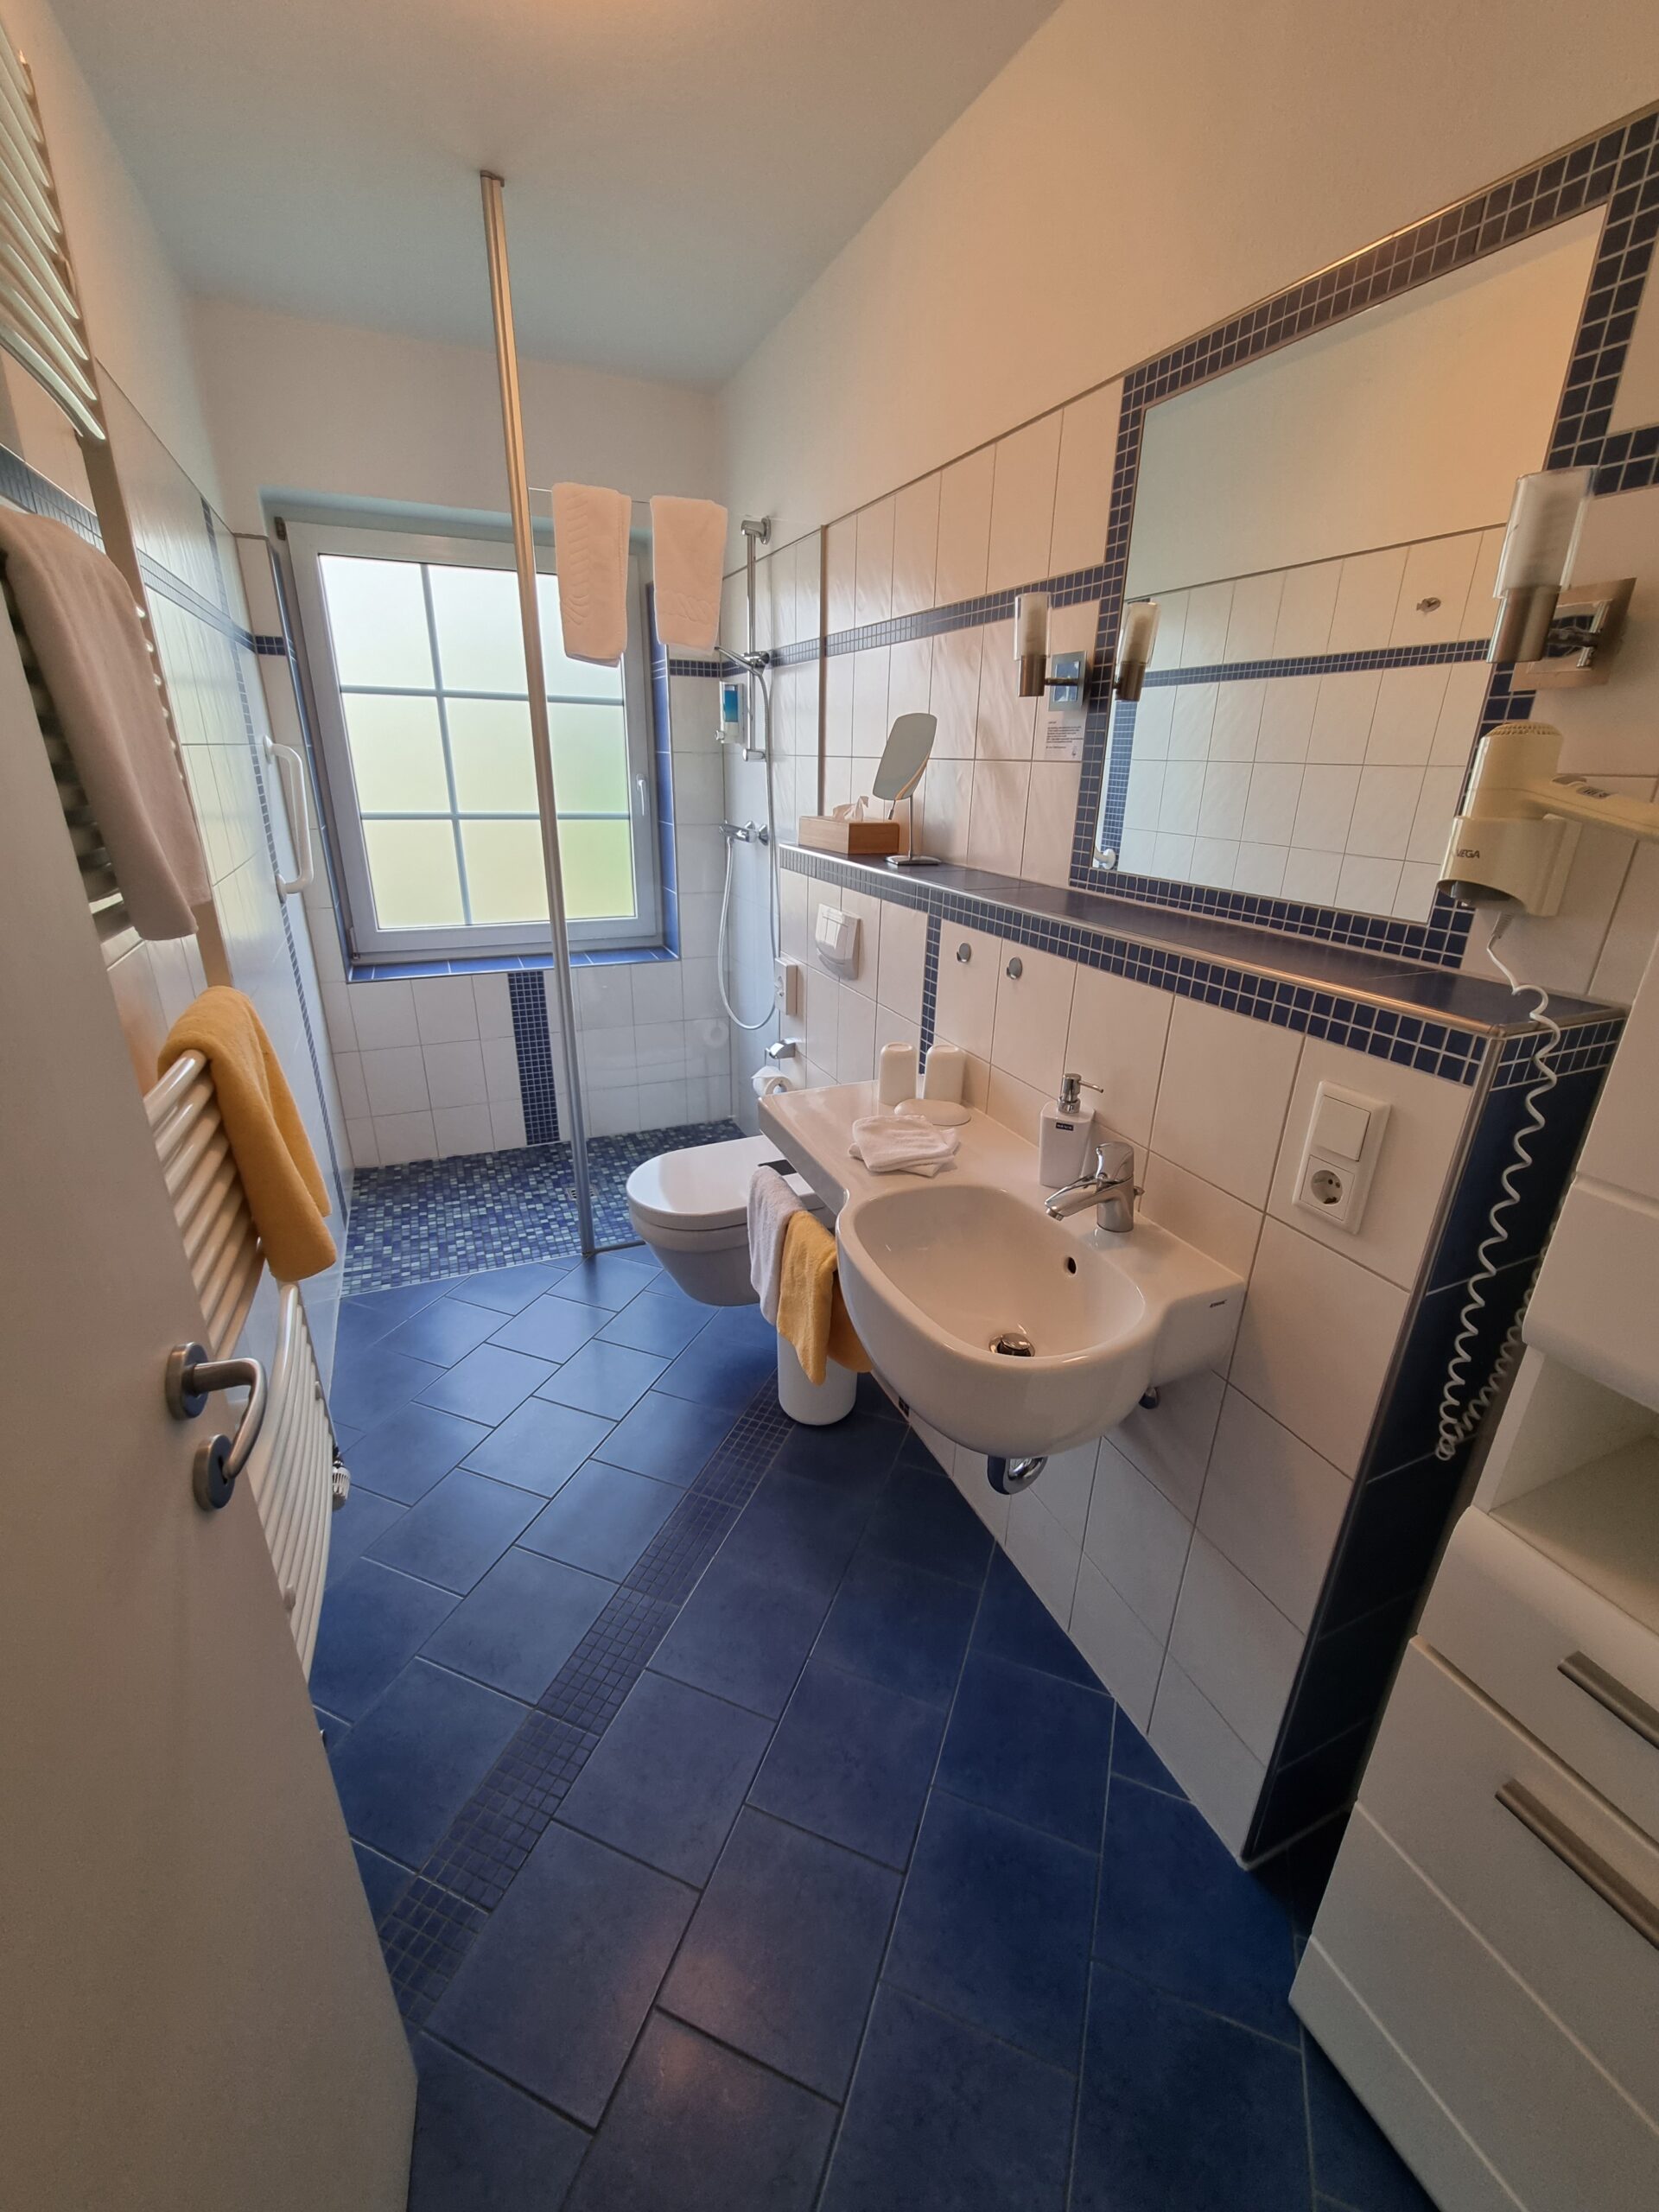 Badezimmer mit Dusch- und Waschbereich der Kaminsuite im Hotel Friesenhuus